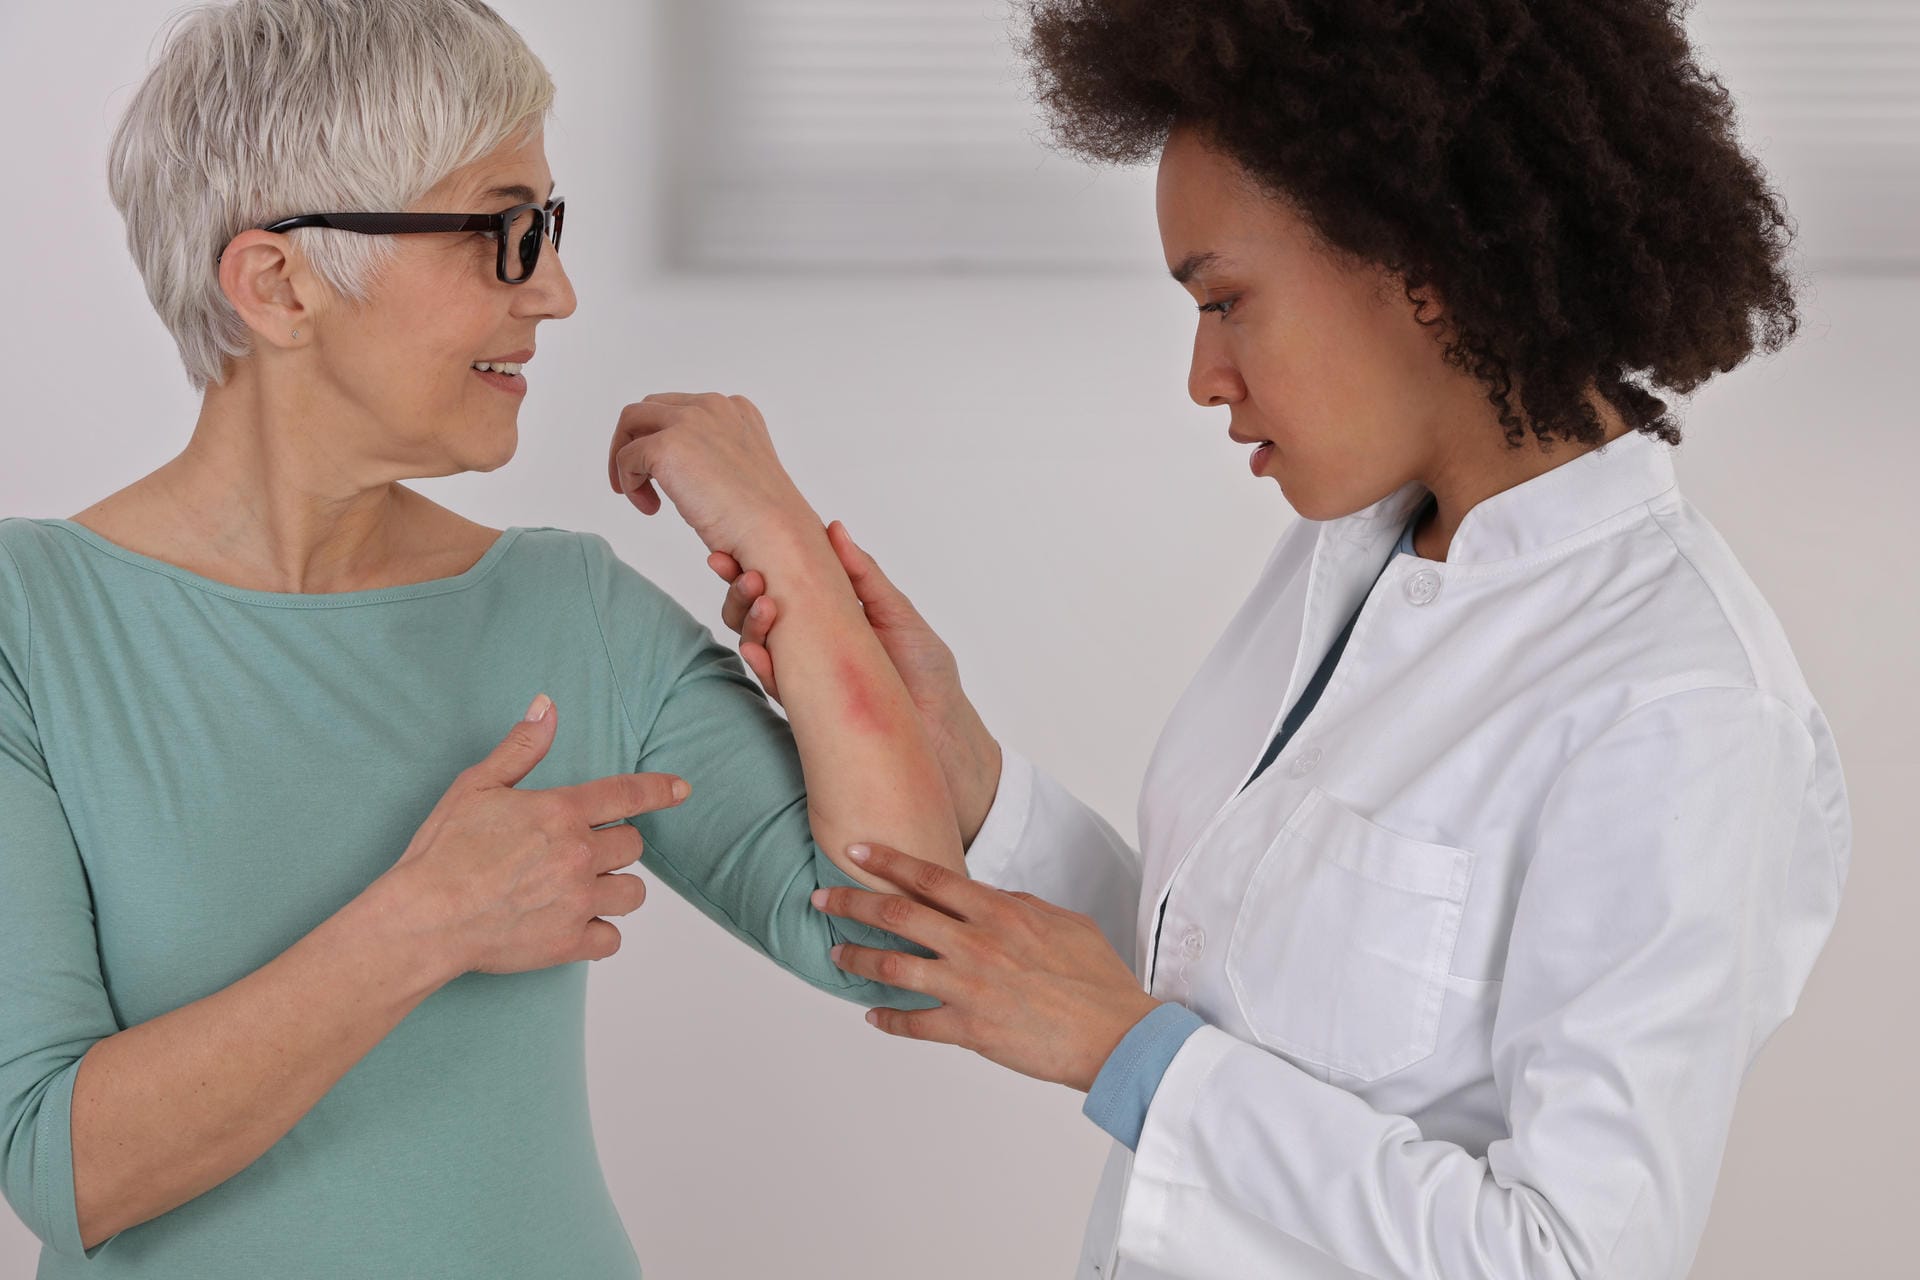 Eine Frau zeigt einer Ärztin eine Hautstelle am Unterarm.